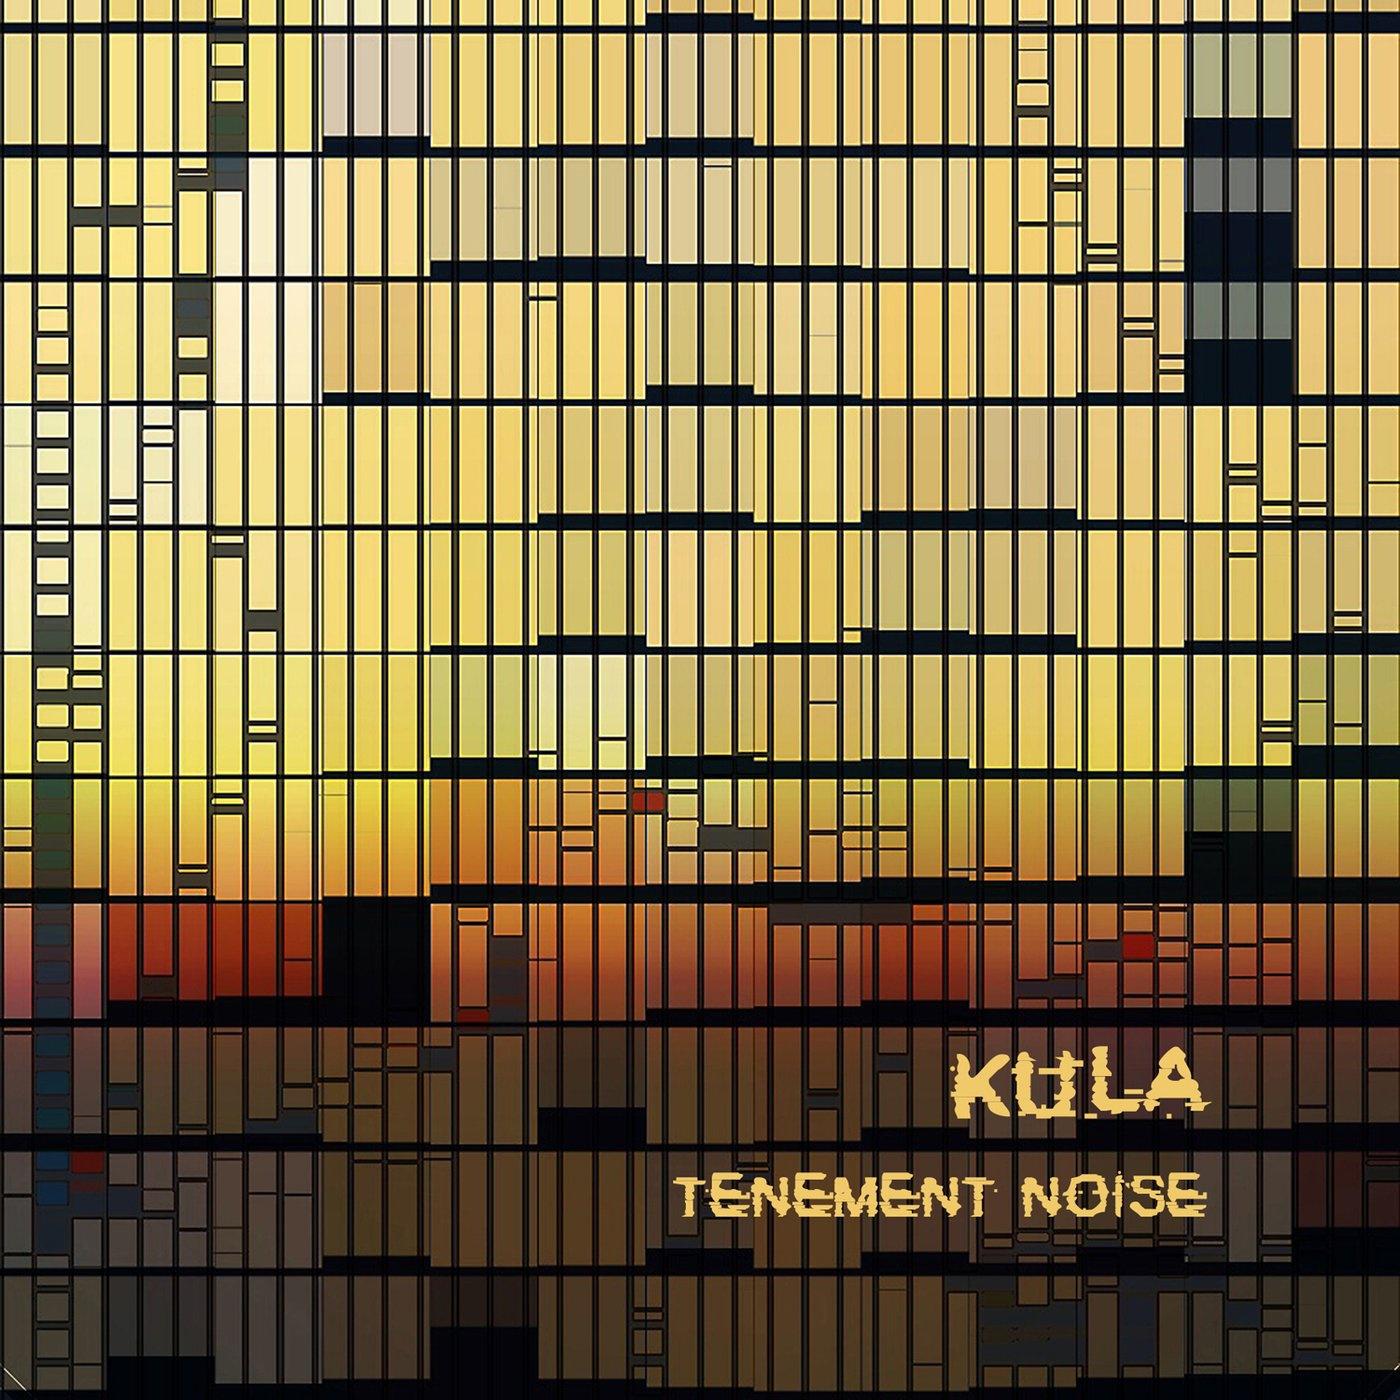 Kula - Tenement Noise (Beat Mix)